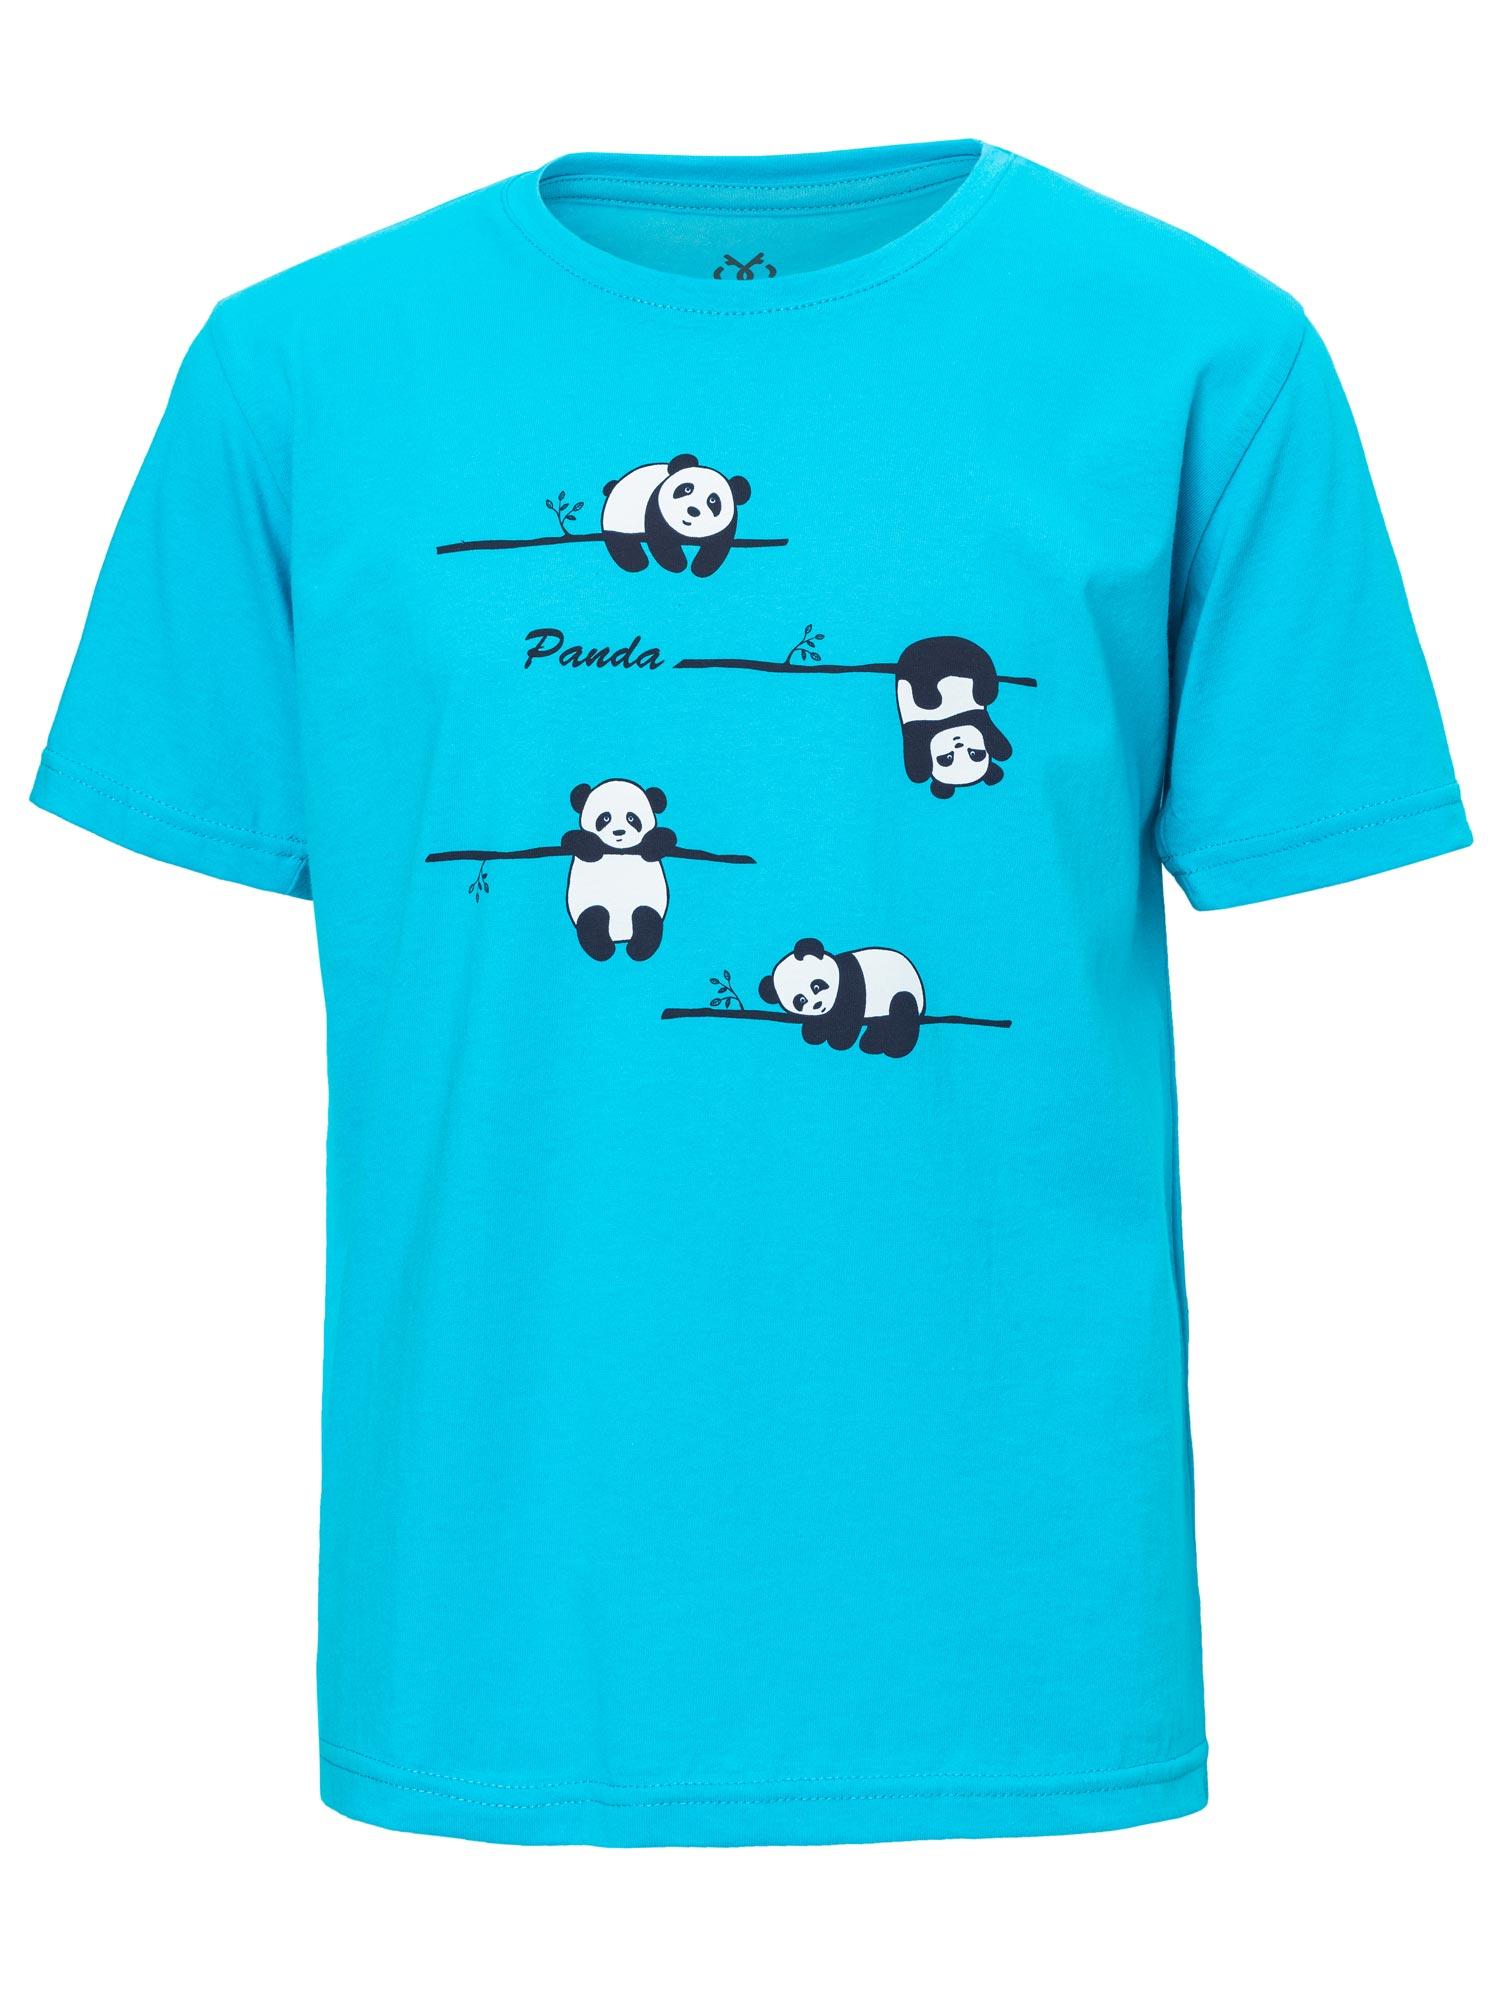 Selected image for BRILLE Majica za dečake Panda plava